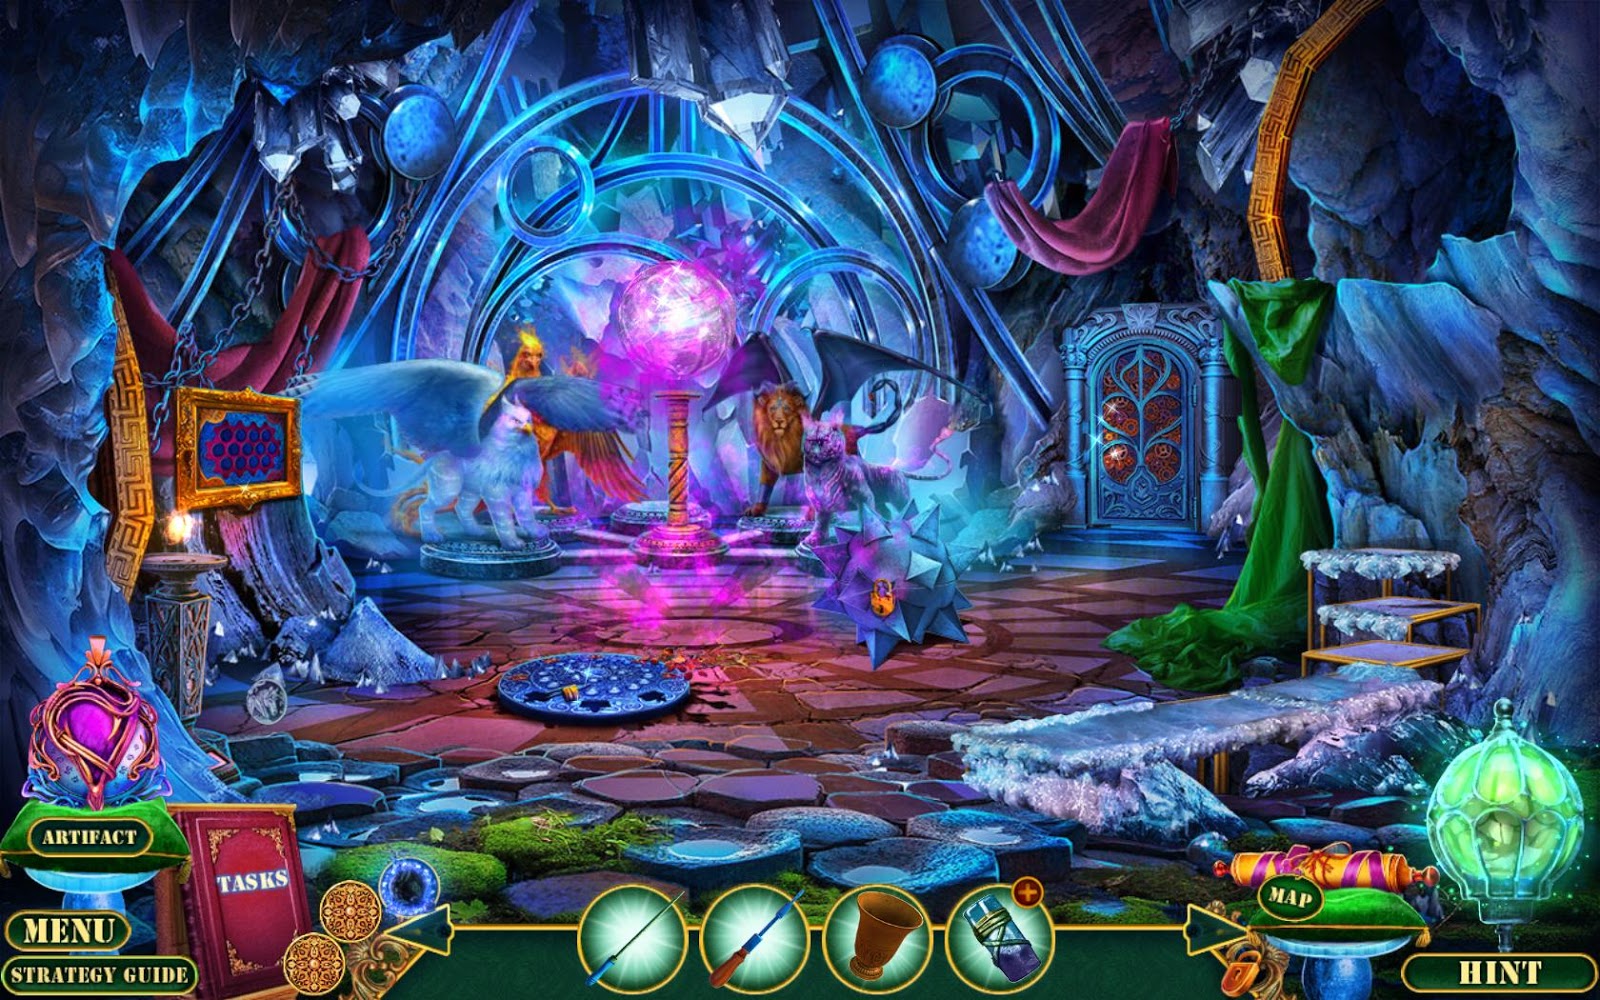 Enchanted Portals игра. Kingdom6 игра как проходить.